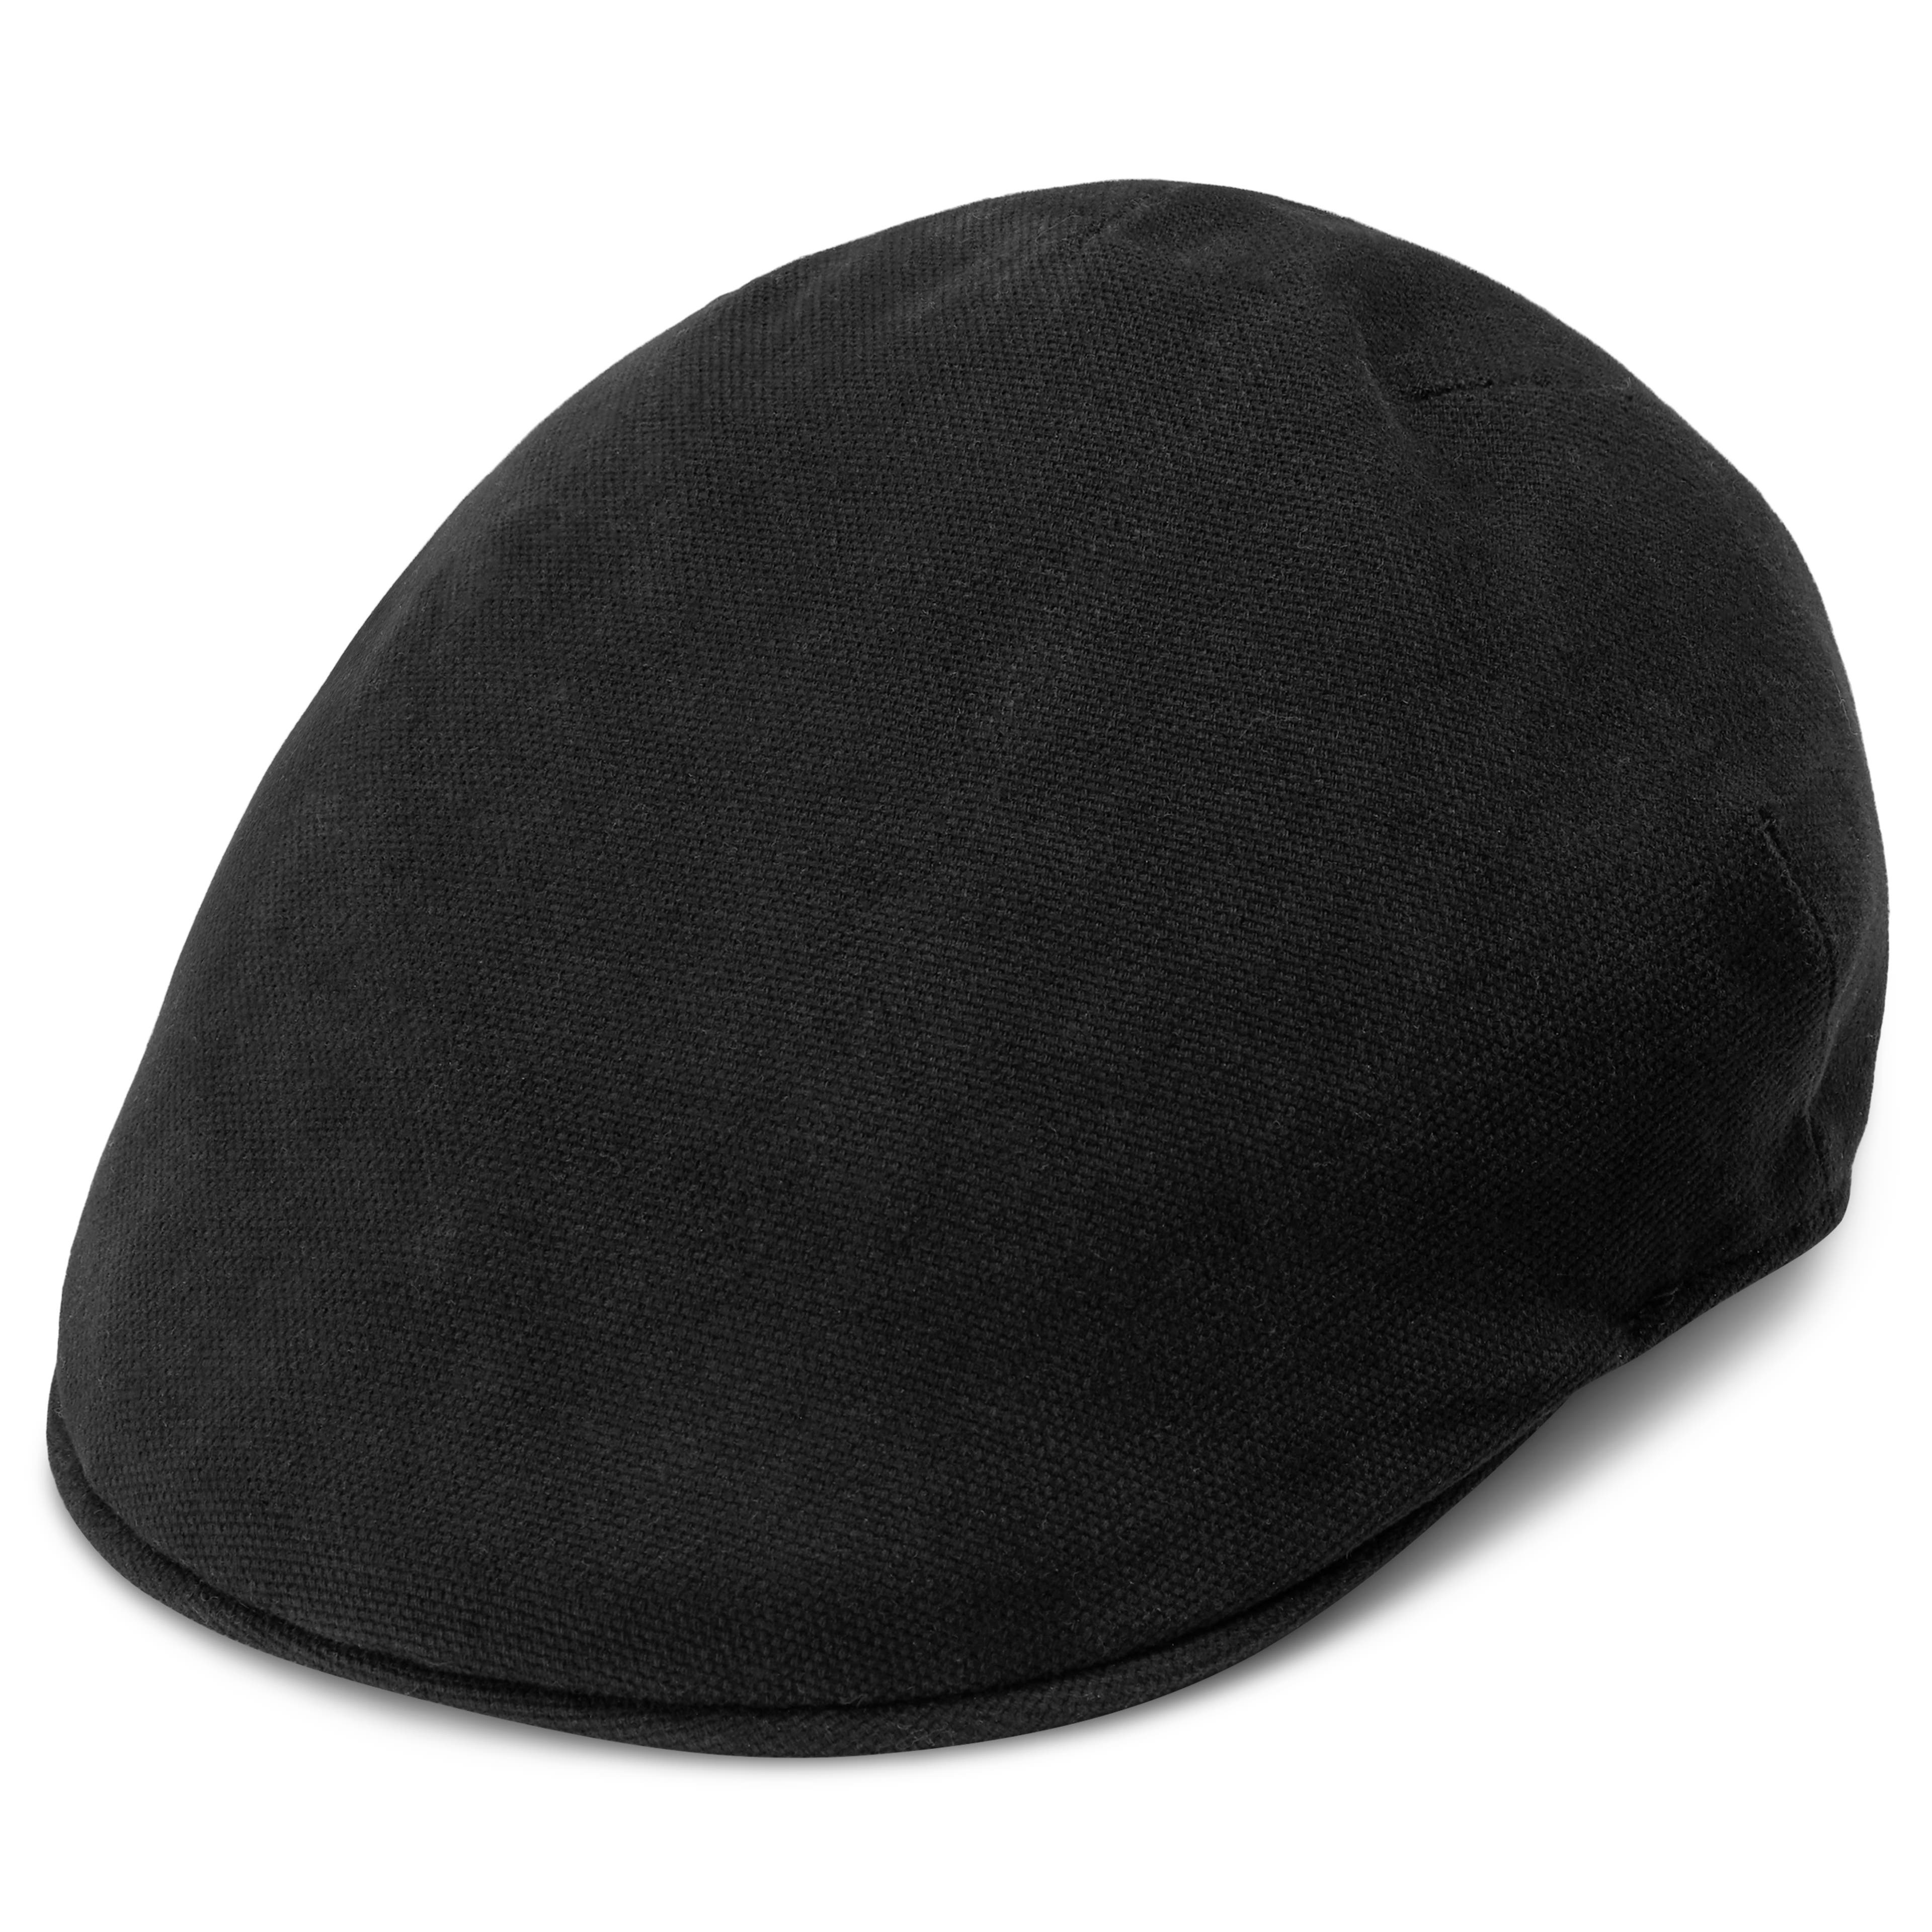 Men's Hats, Flat Caps, Baseball Caps & More